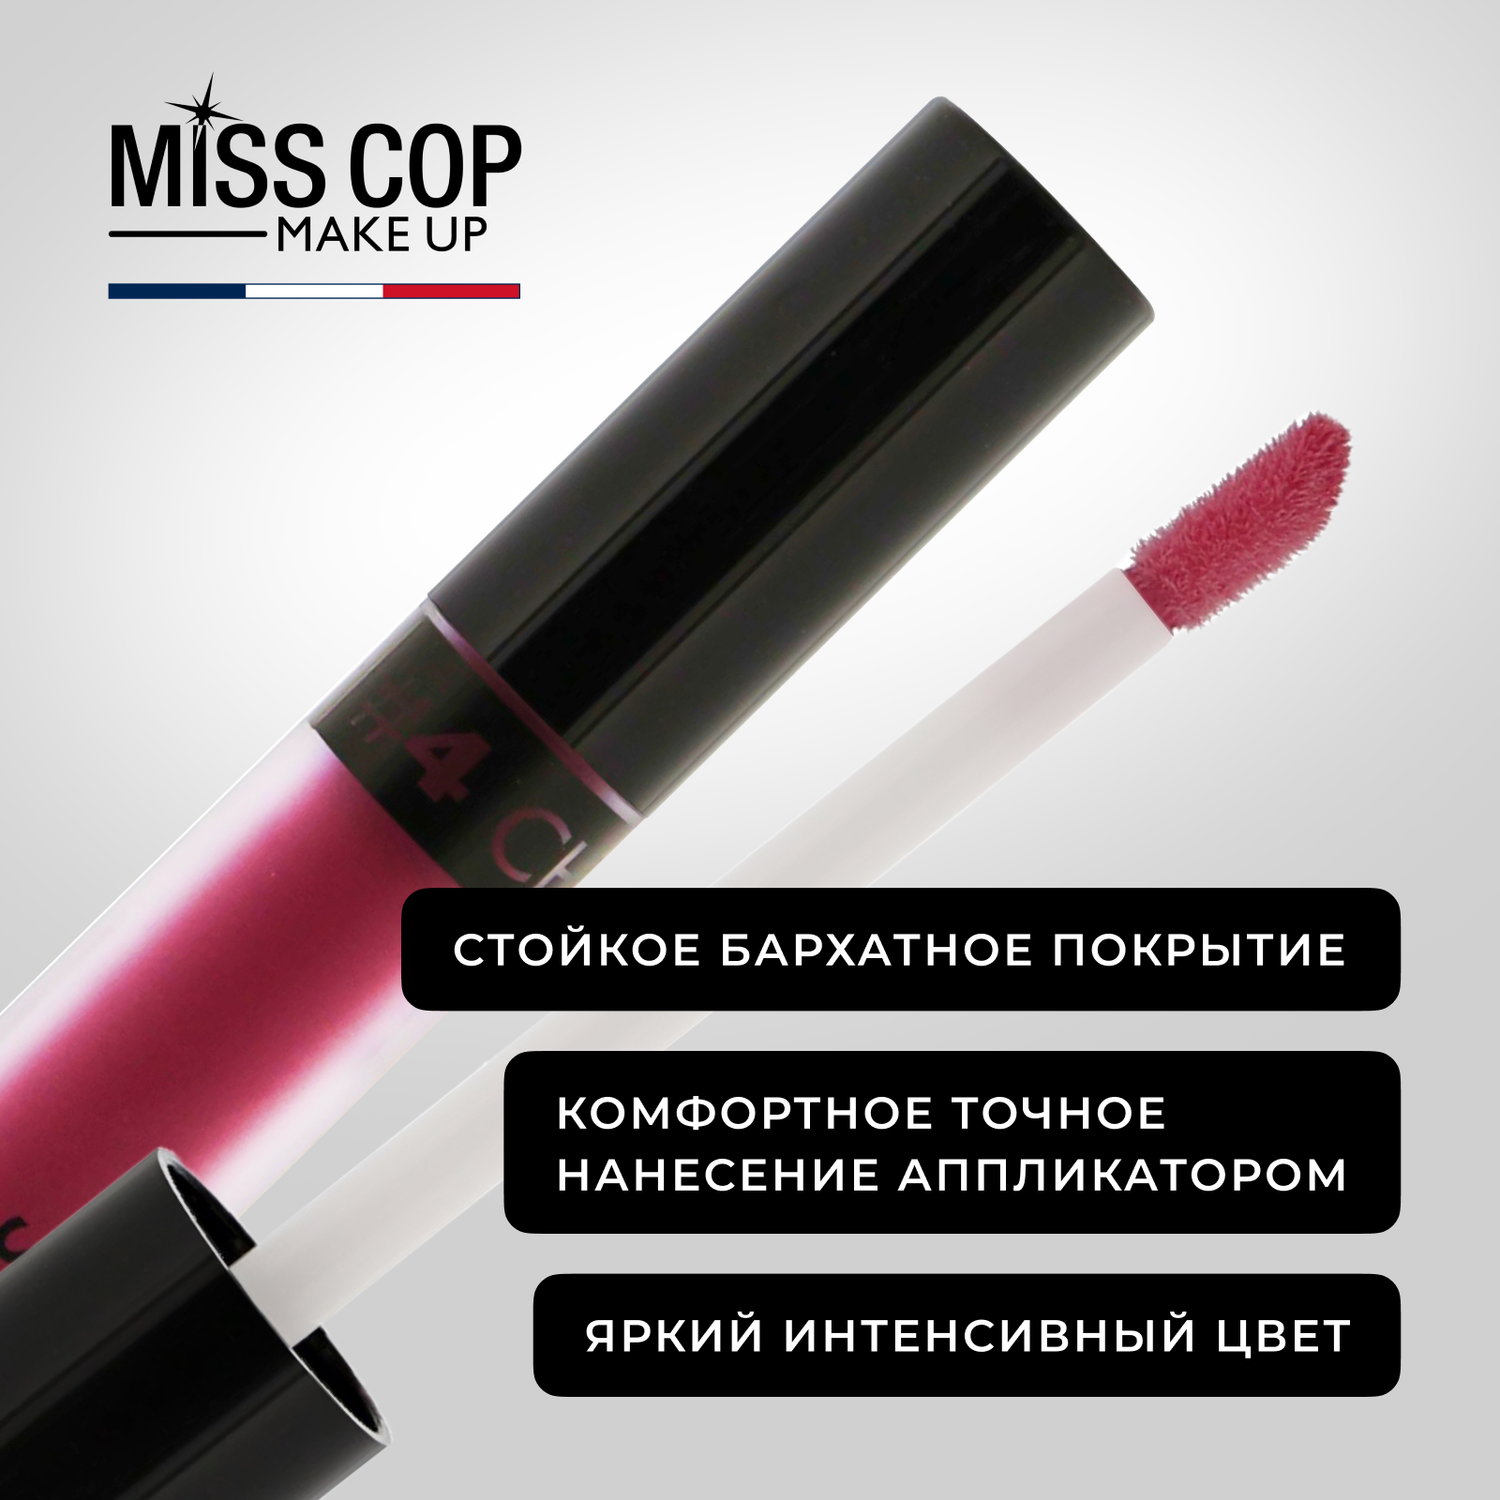 Жидкая губная помада Miss Cop матовая стойкая вишневая Франция цвет 04 Cherry 2 мл - фото 5